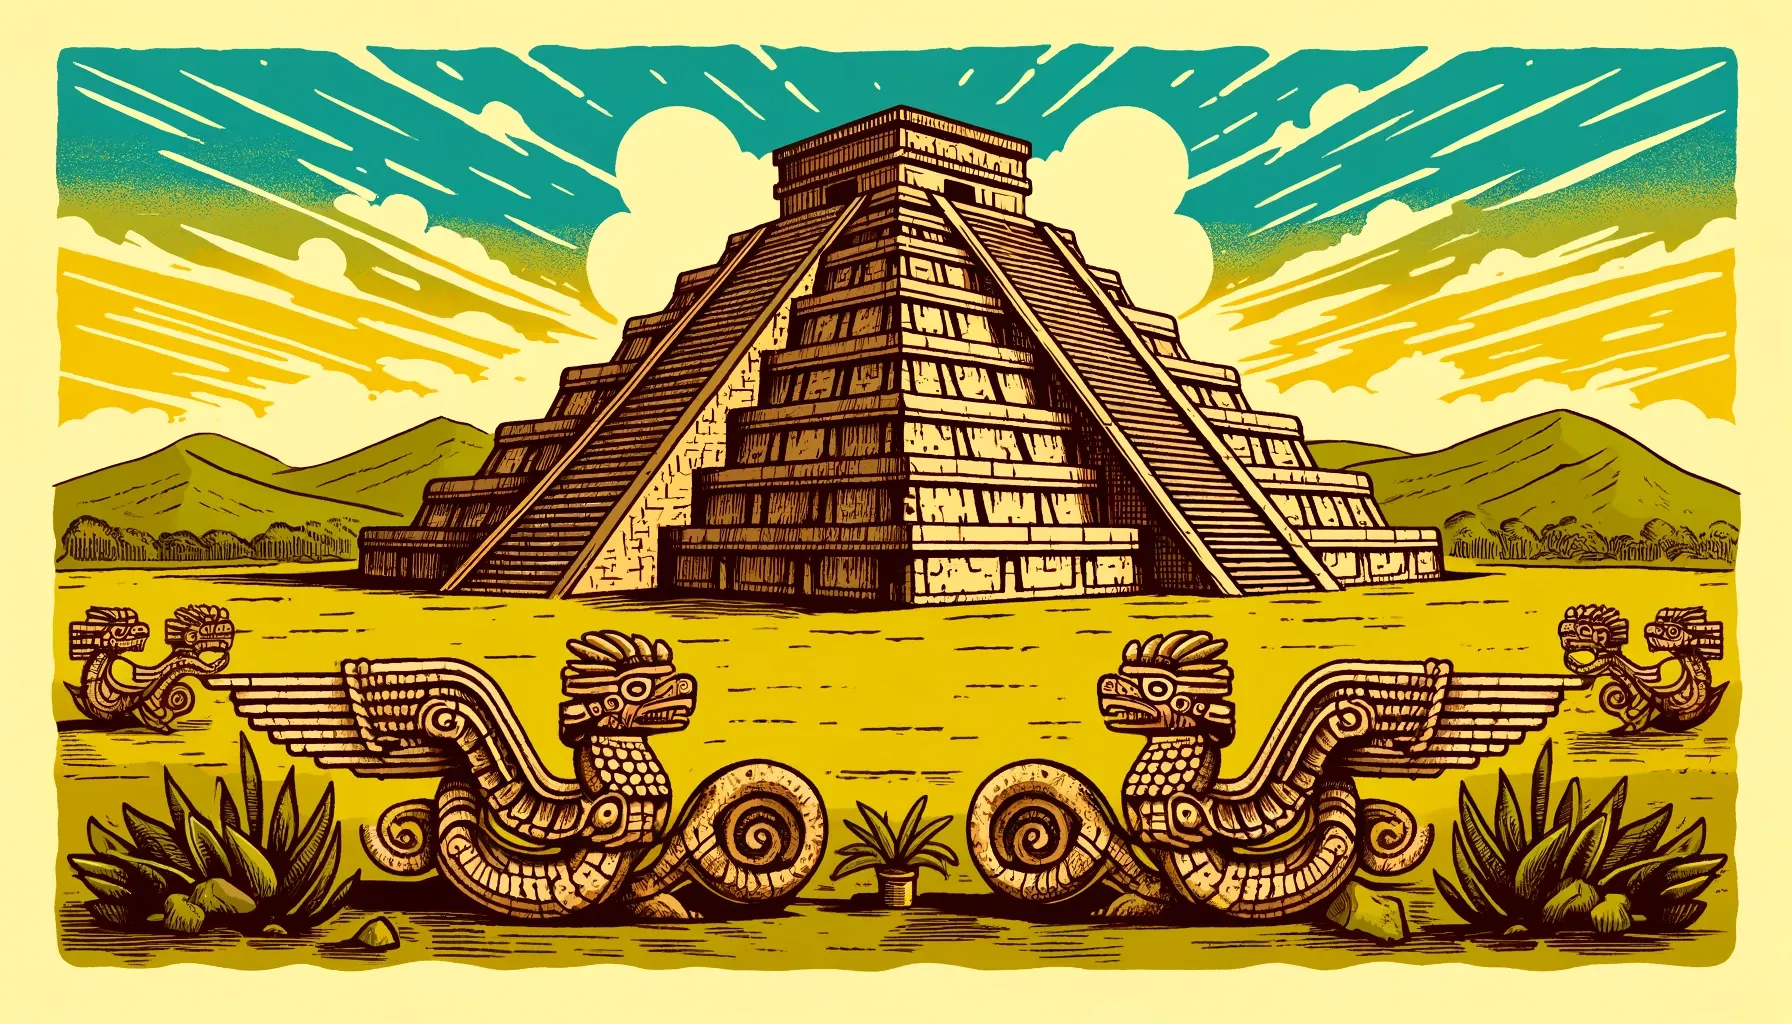 Ilustración del Templo de Quetzalcóatl en Teotihuacán, mostrando la pirámide con esculturas de serpientes emplumadas y un cielo brillante de fondo.